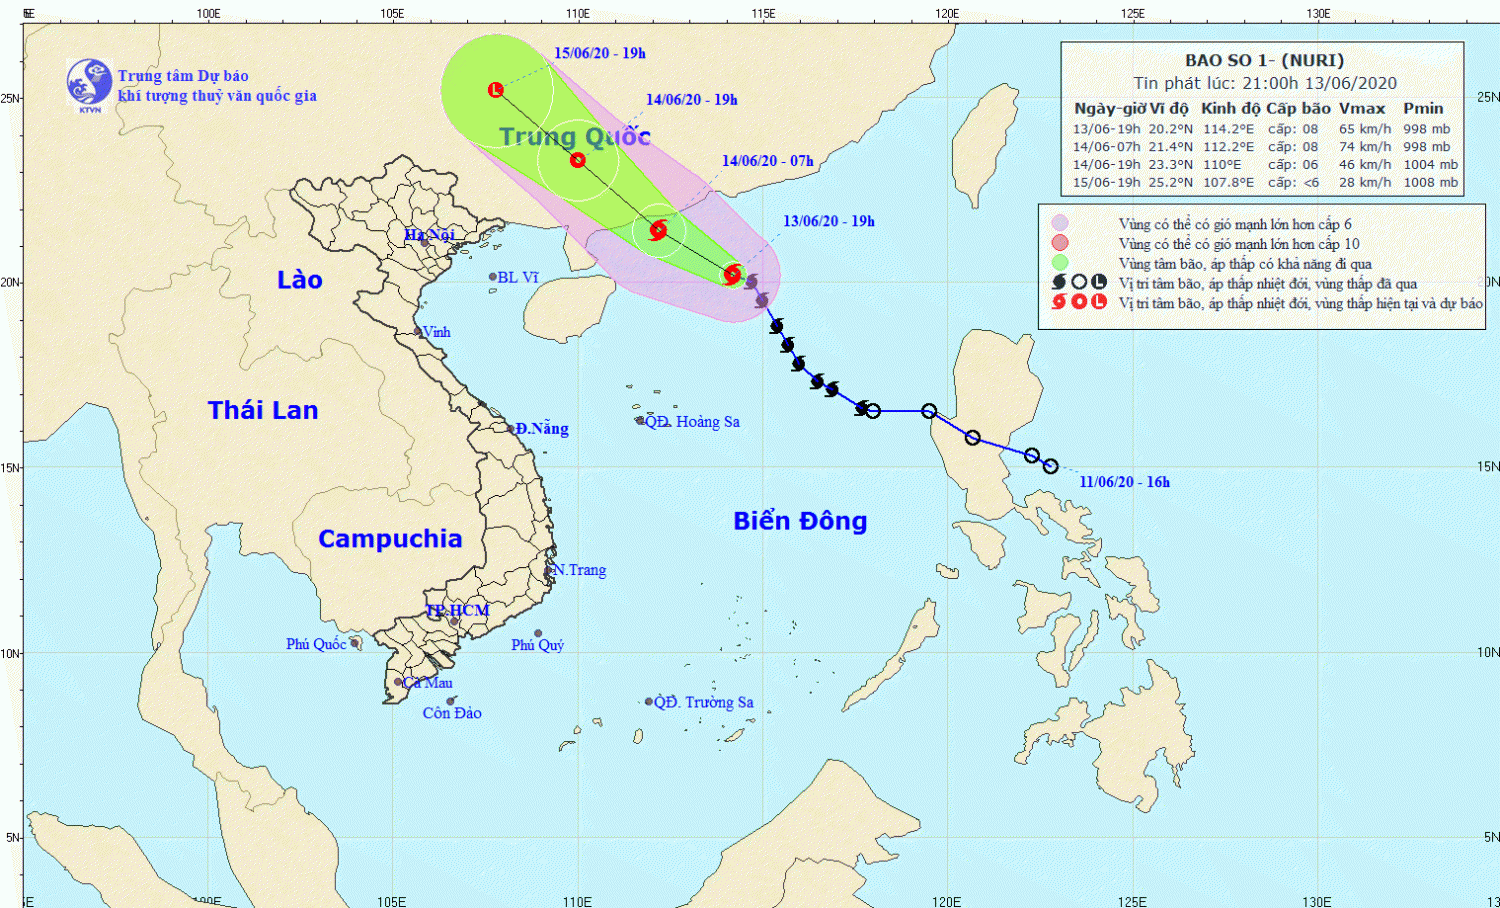 Tin bão trên Biển Đông - cơn bão số 01 (21h00 ngày 13/6)